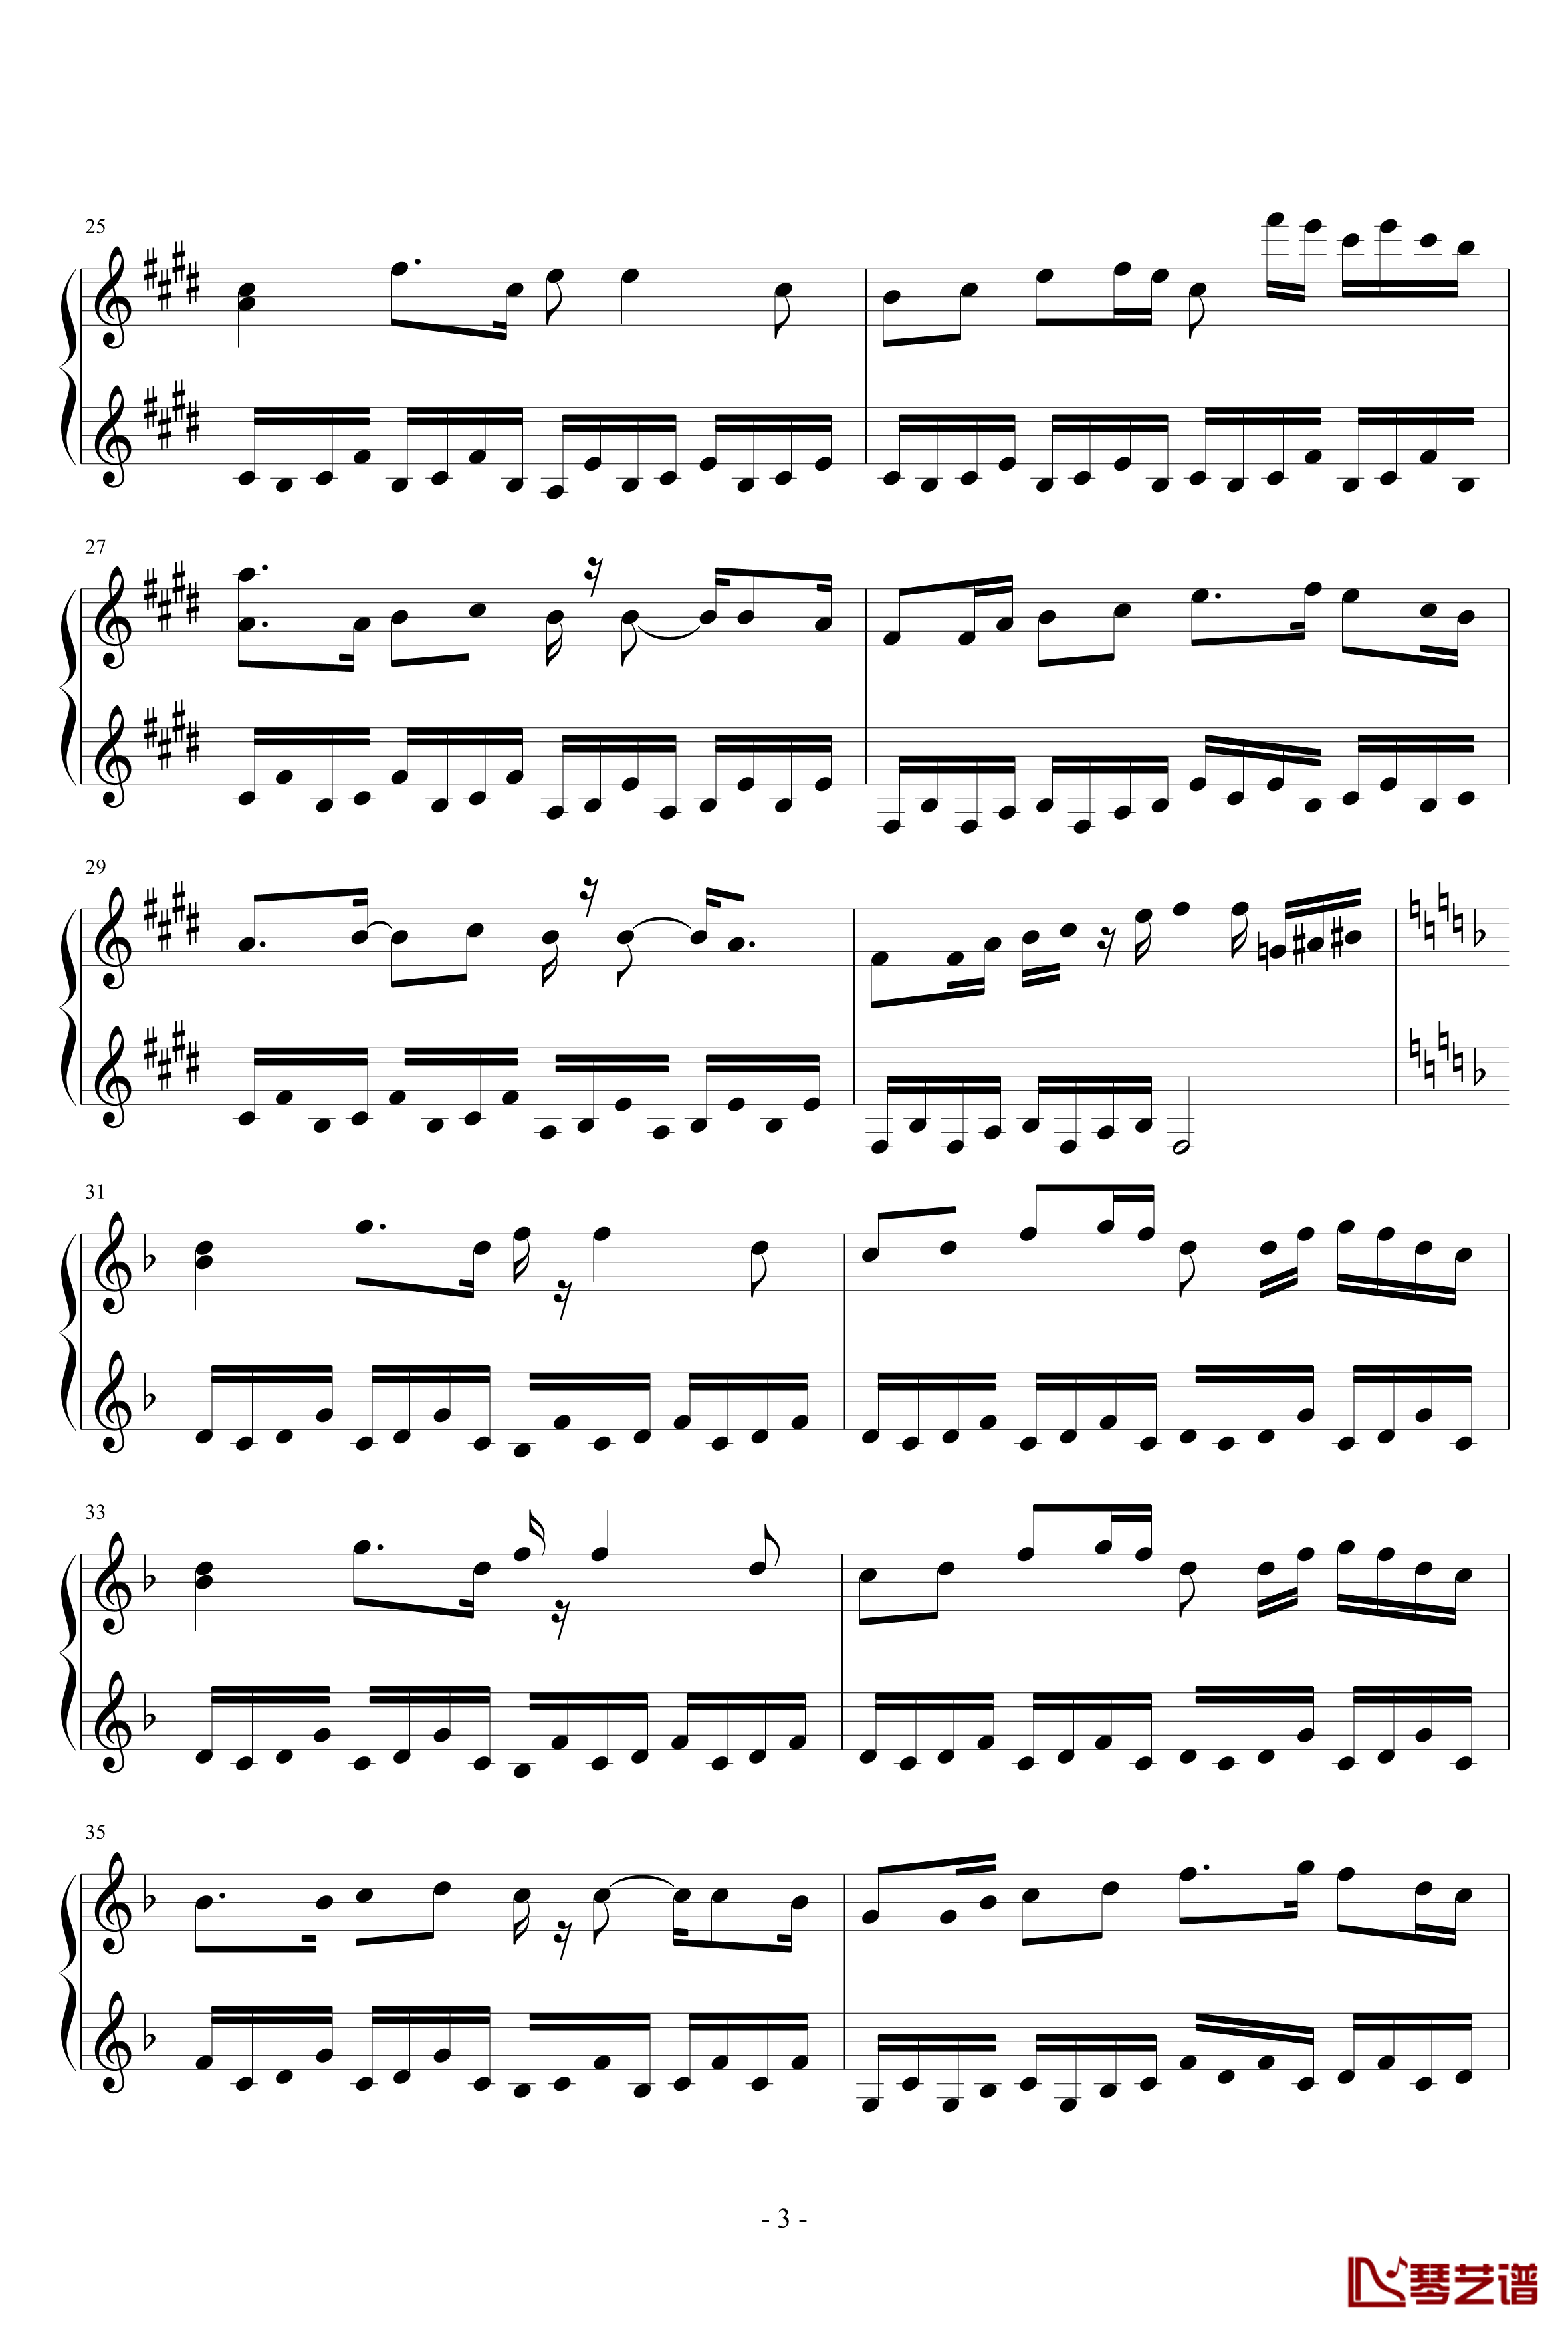 笑傲江湖钢琴谱-2012改版，完全钢琴可演奏，7级3